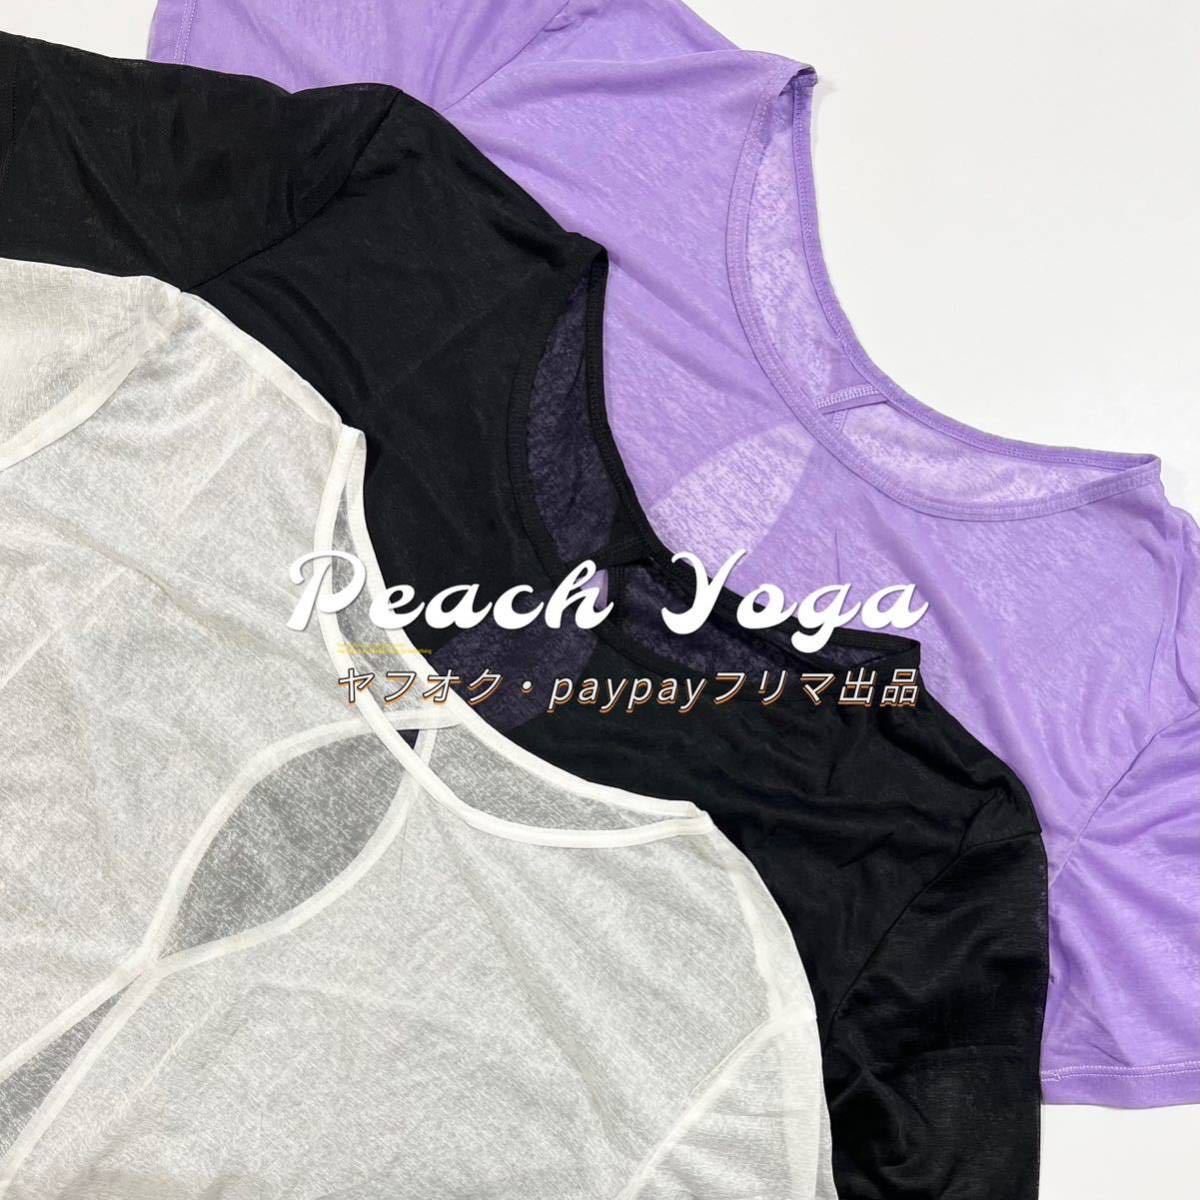  лиловый S размер 2way прозрачный короткий рукав спорт tops йога одежда body type покрытие накладка нет tops пилатес тренировка футболка 